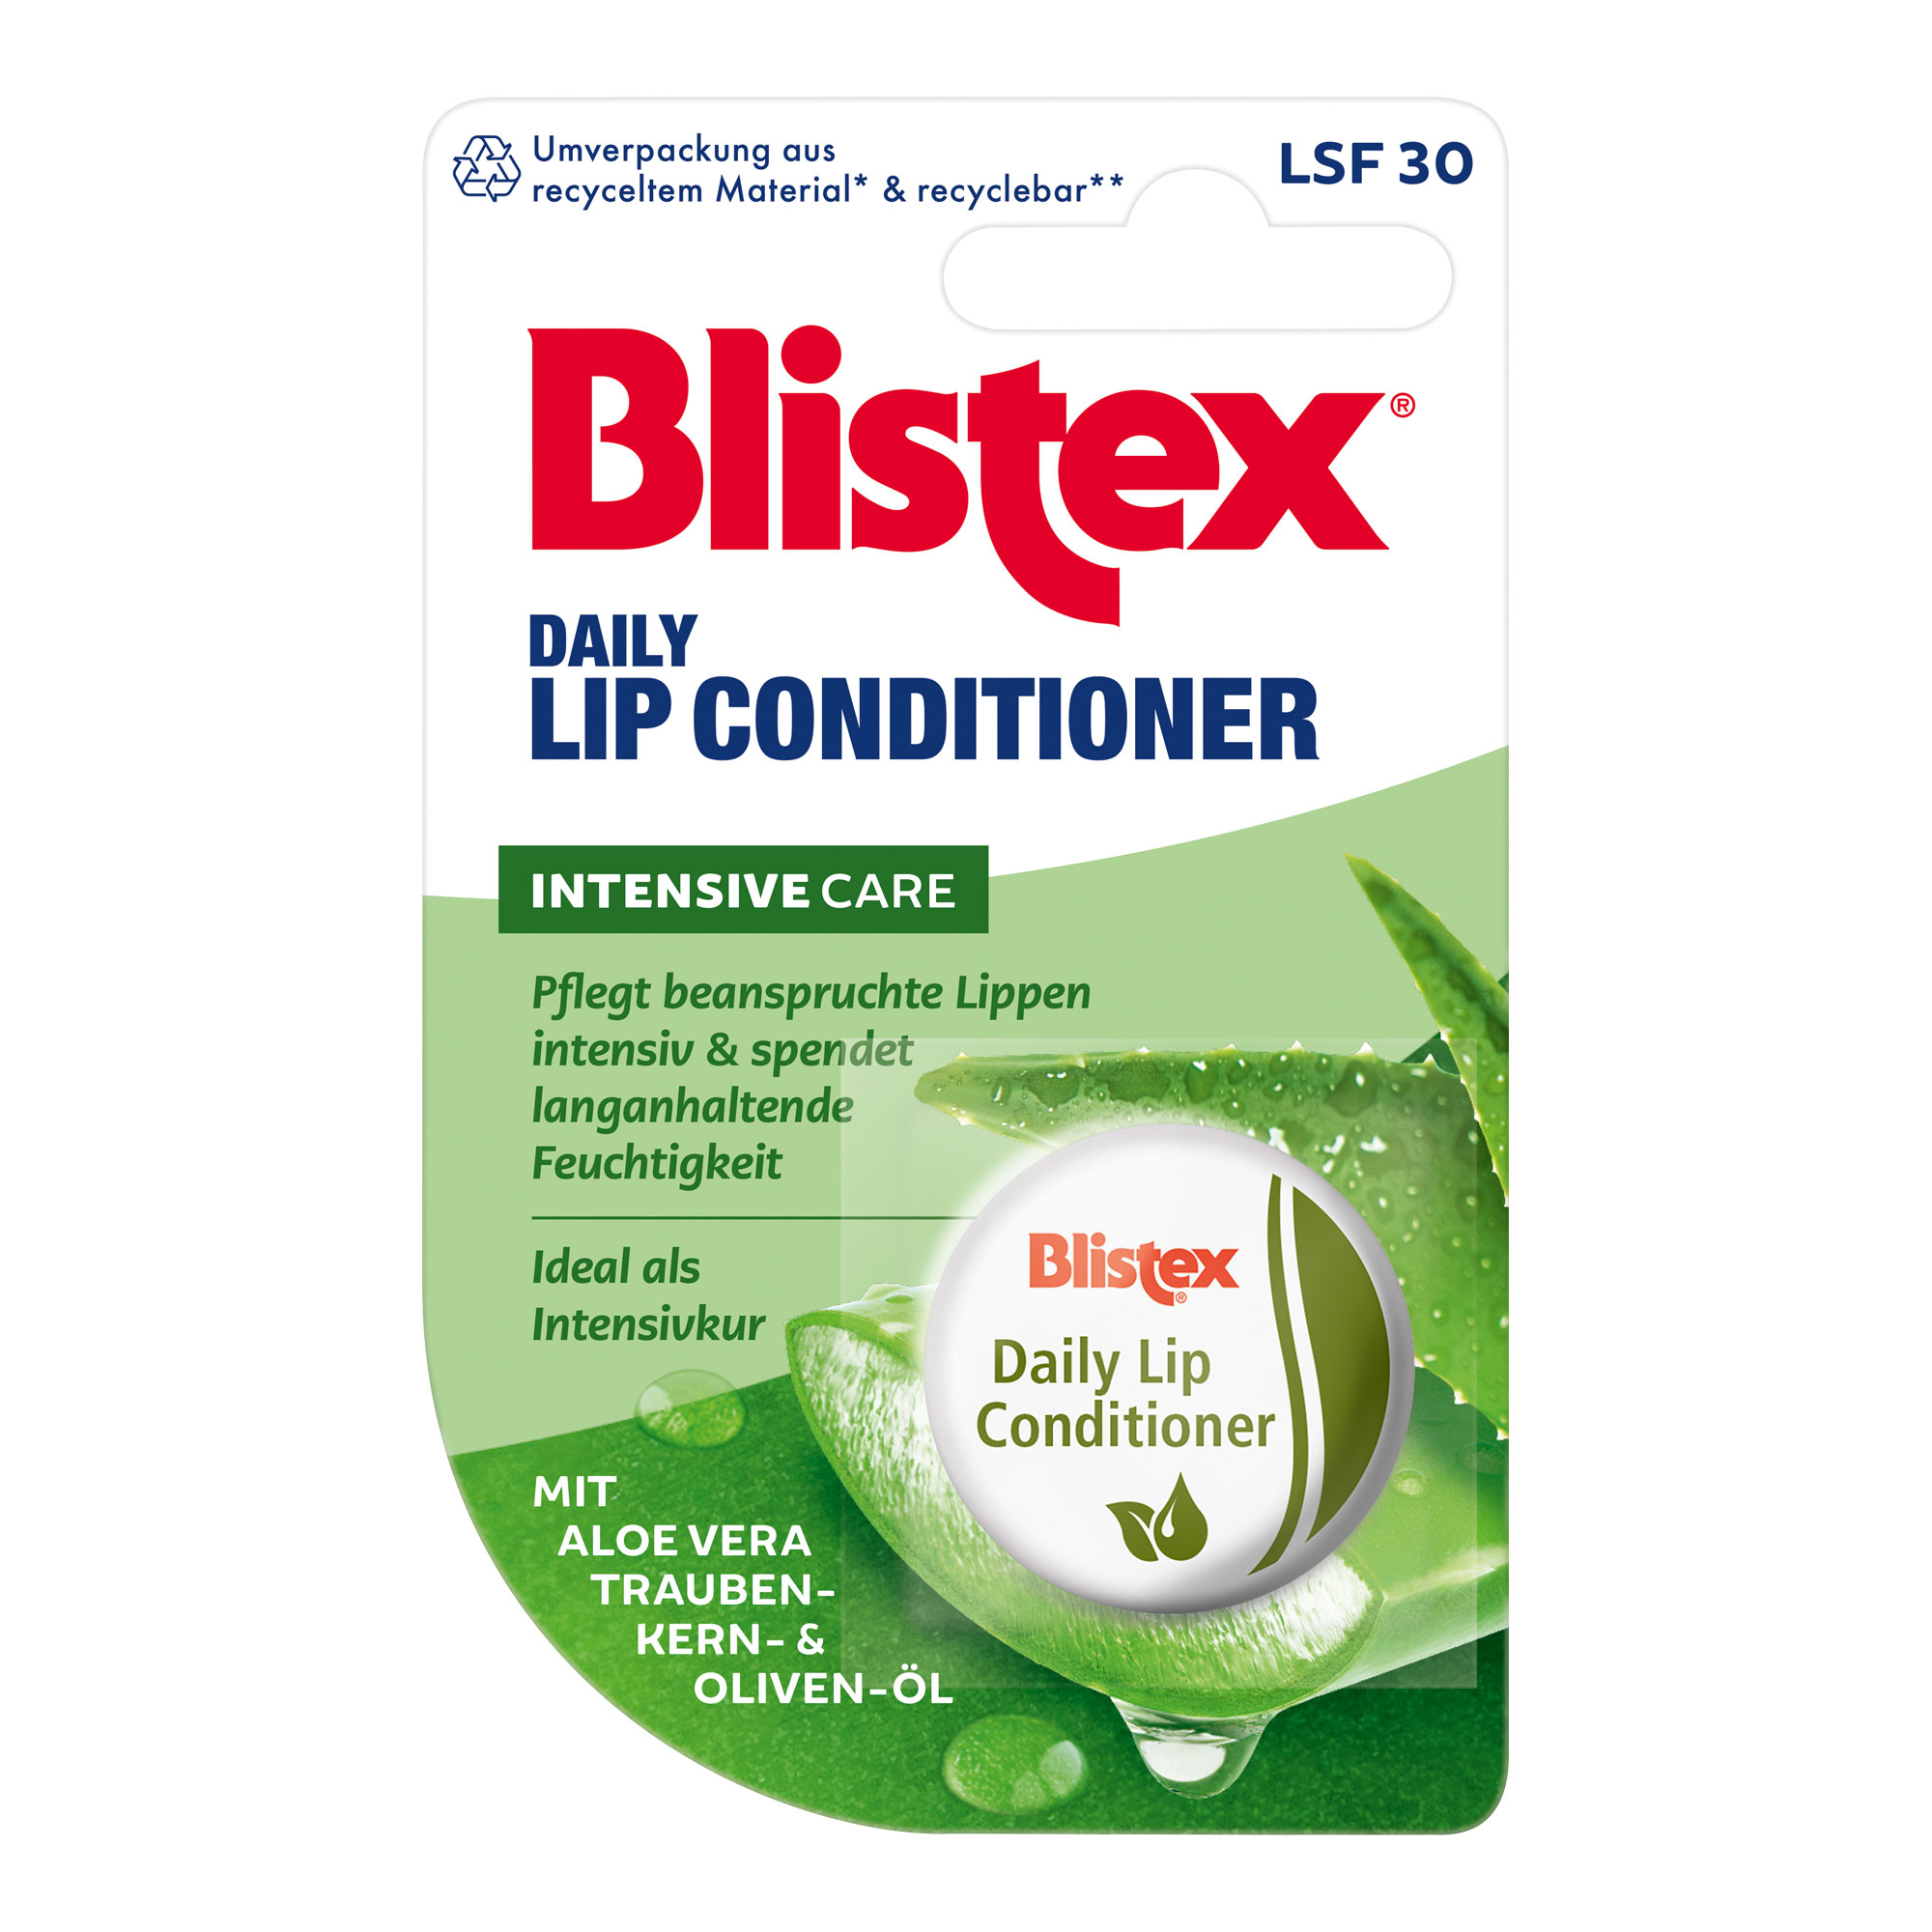 Blistex Lippen Conditioner Salbe Dose.